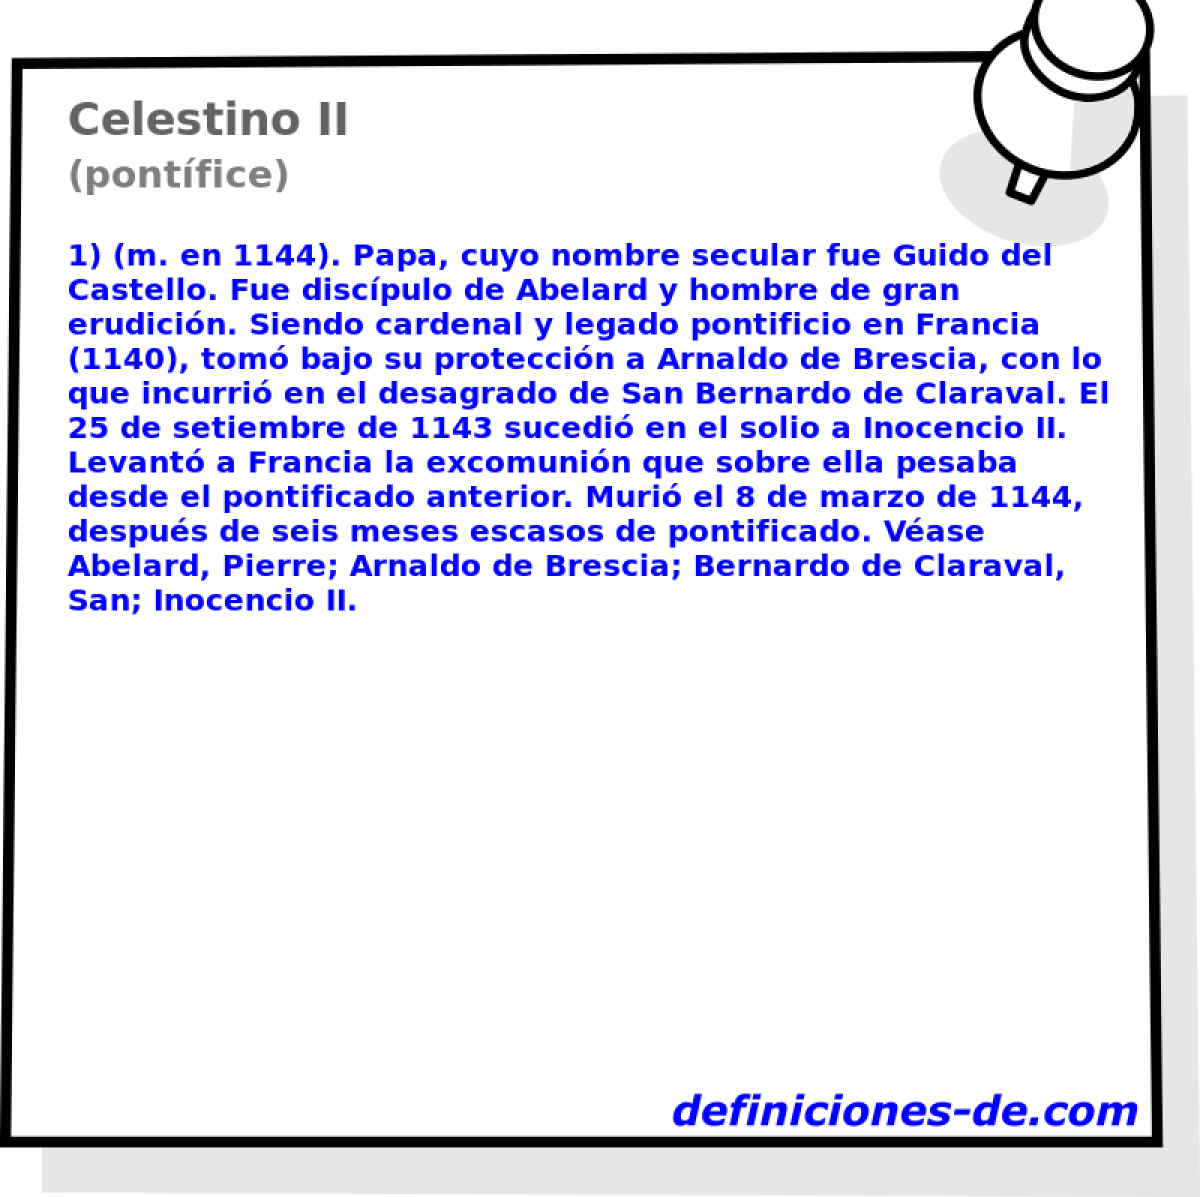 Celestino II (pontfice)